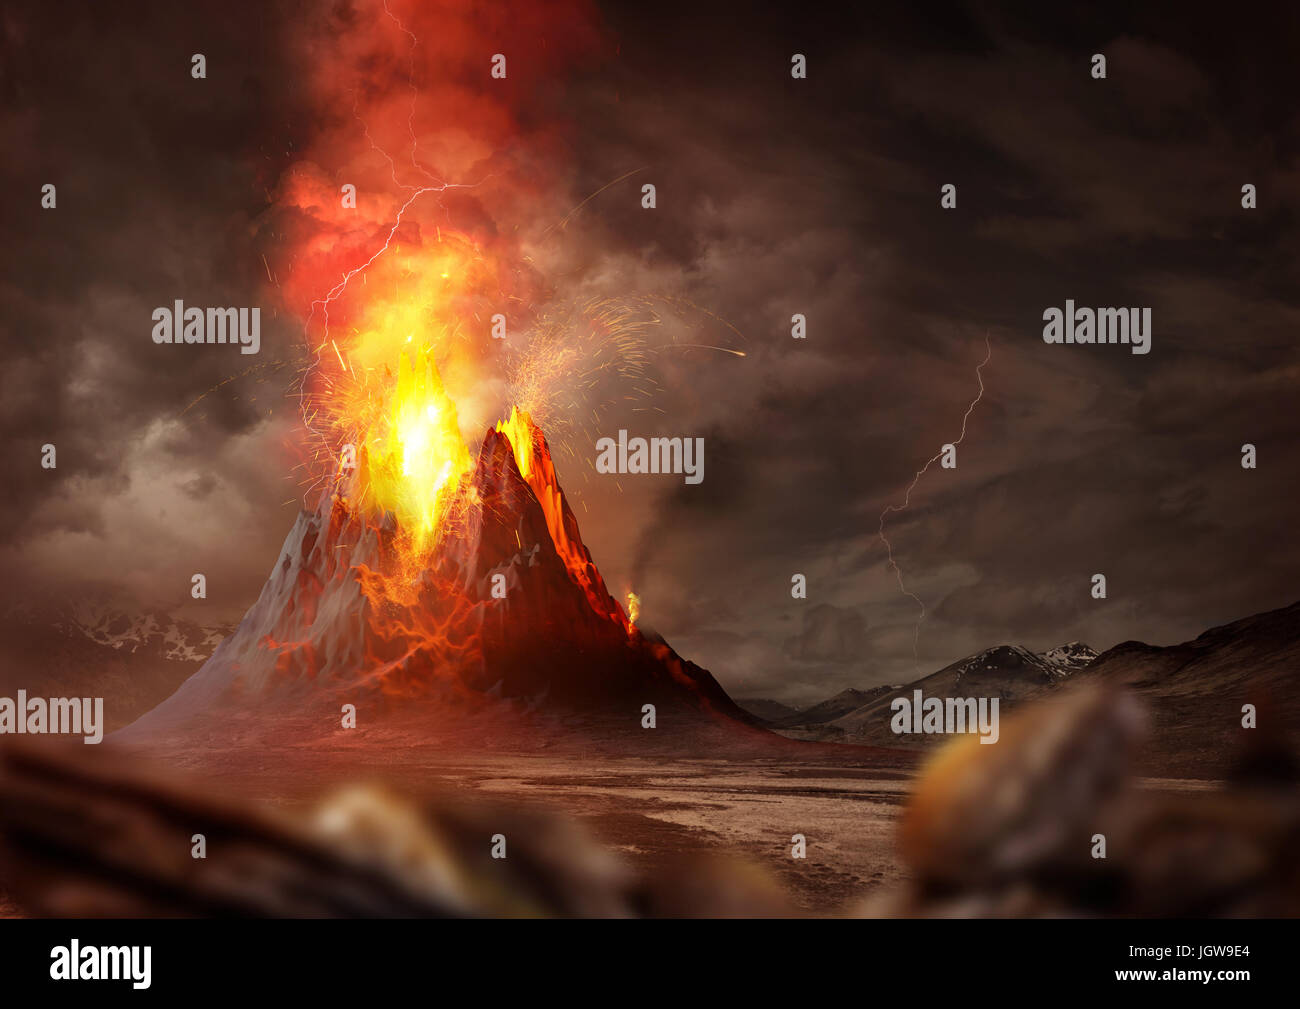 Erupción Volcánica Masiva Un Gran Volcán En Erupción De Lava Caliente Y Gases En La Atmósfera 4761